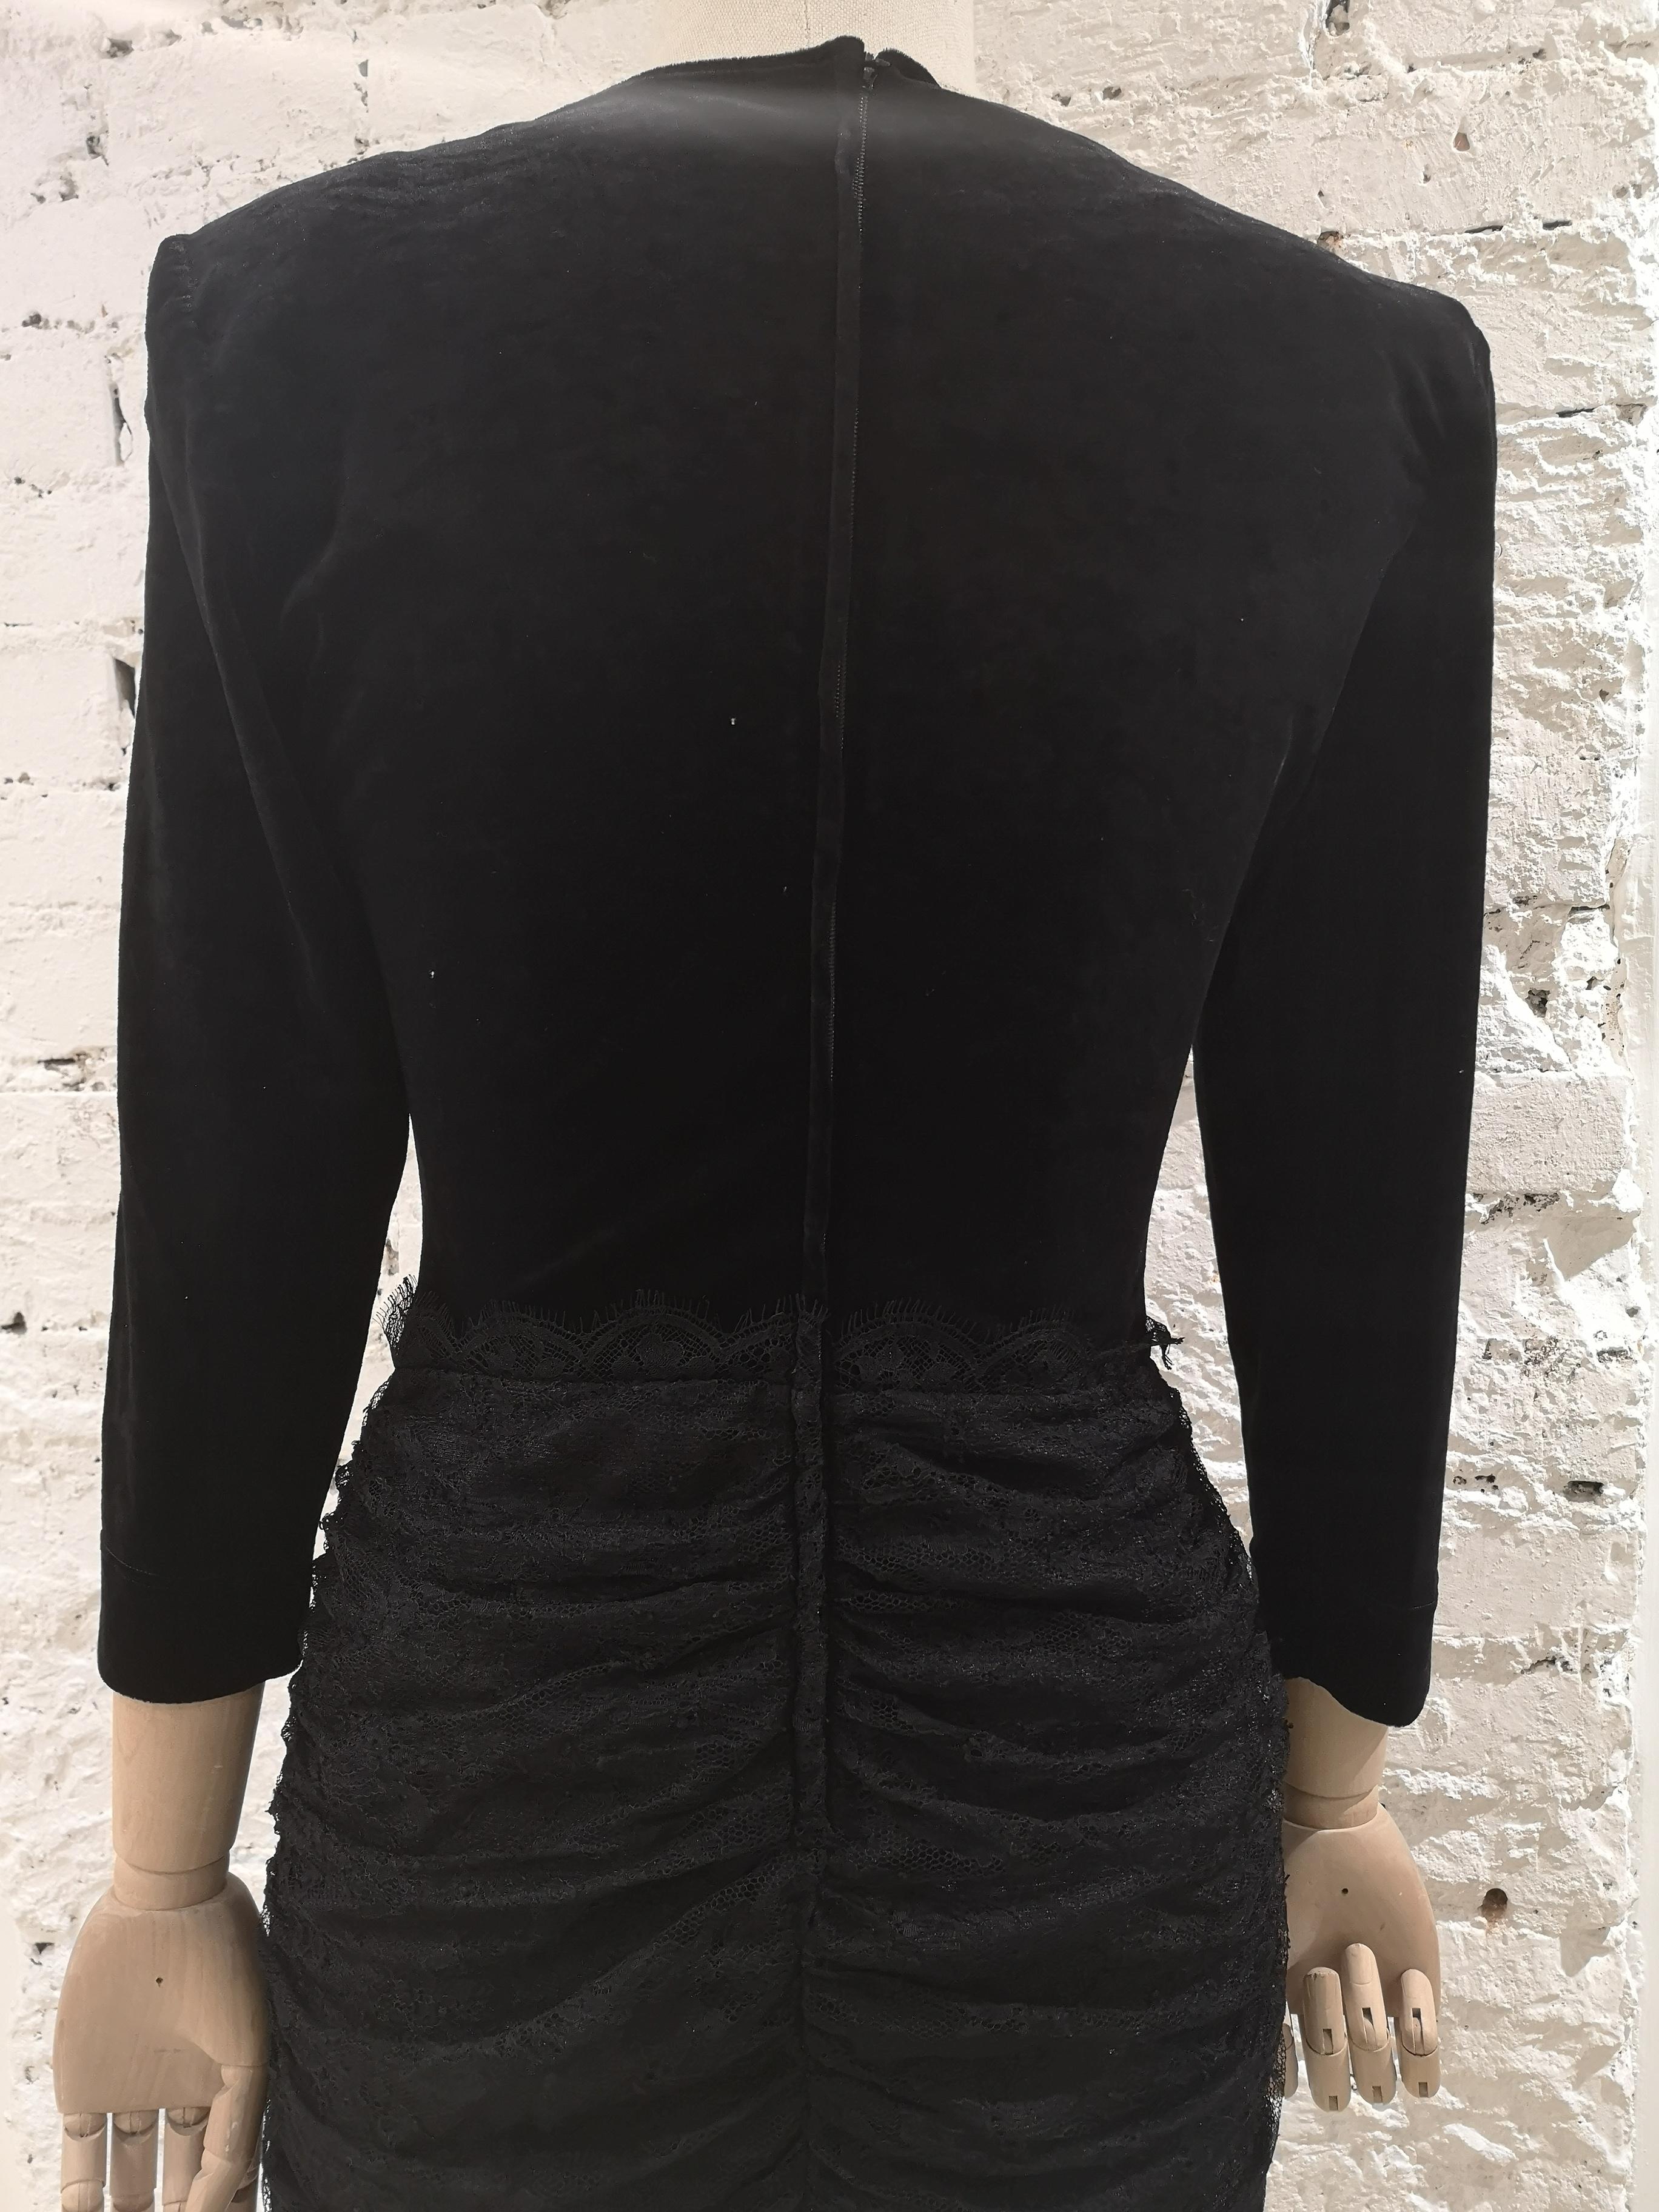 Moschino black velvet dress For Sale 3